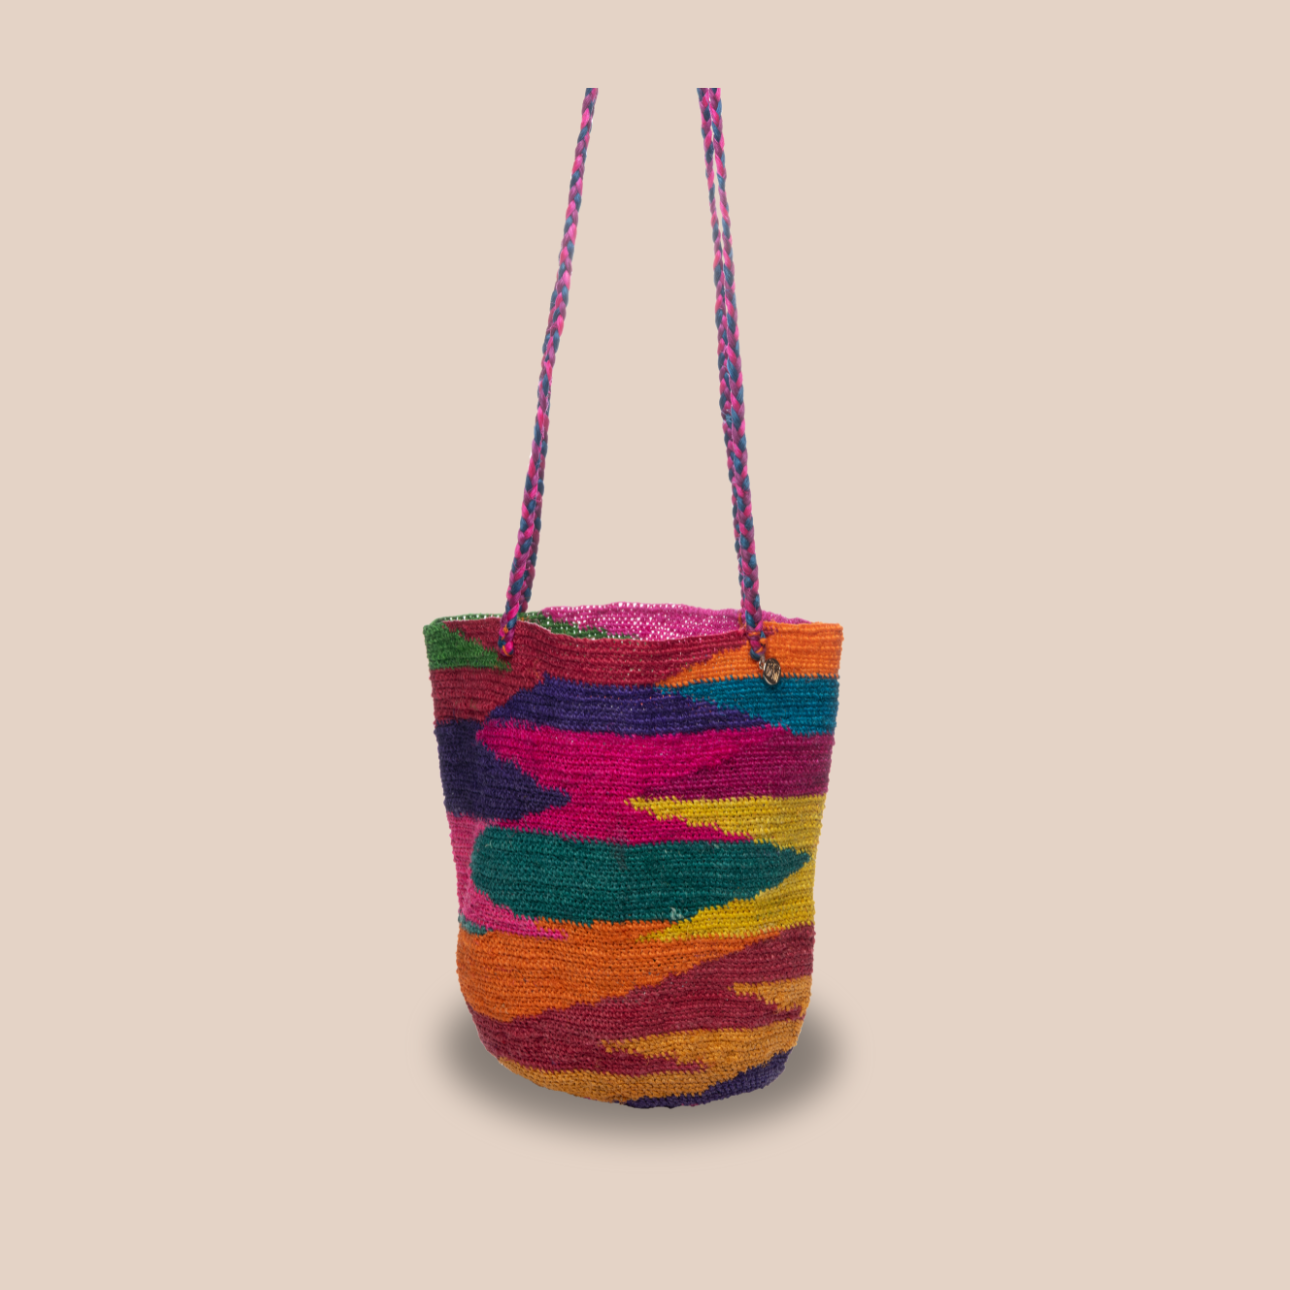 Un sac dolores en fibres de cactus, arborant des couleurs vives et audacieuses